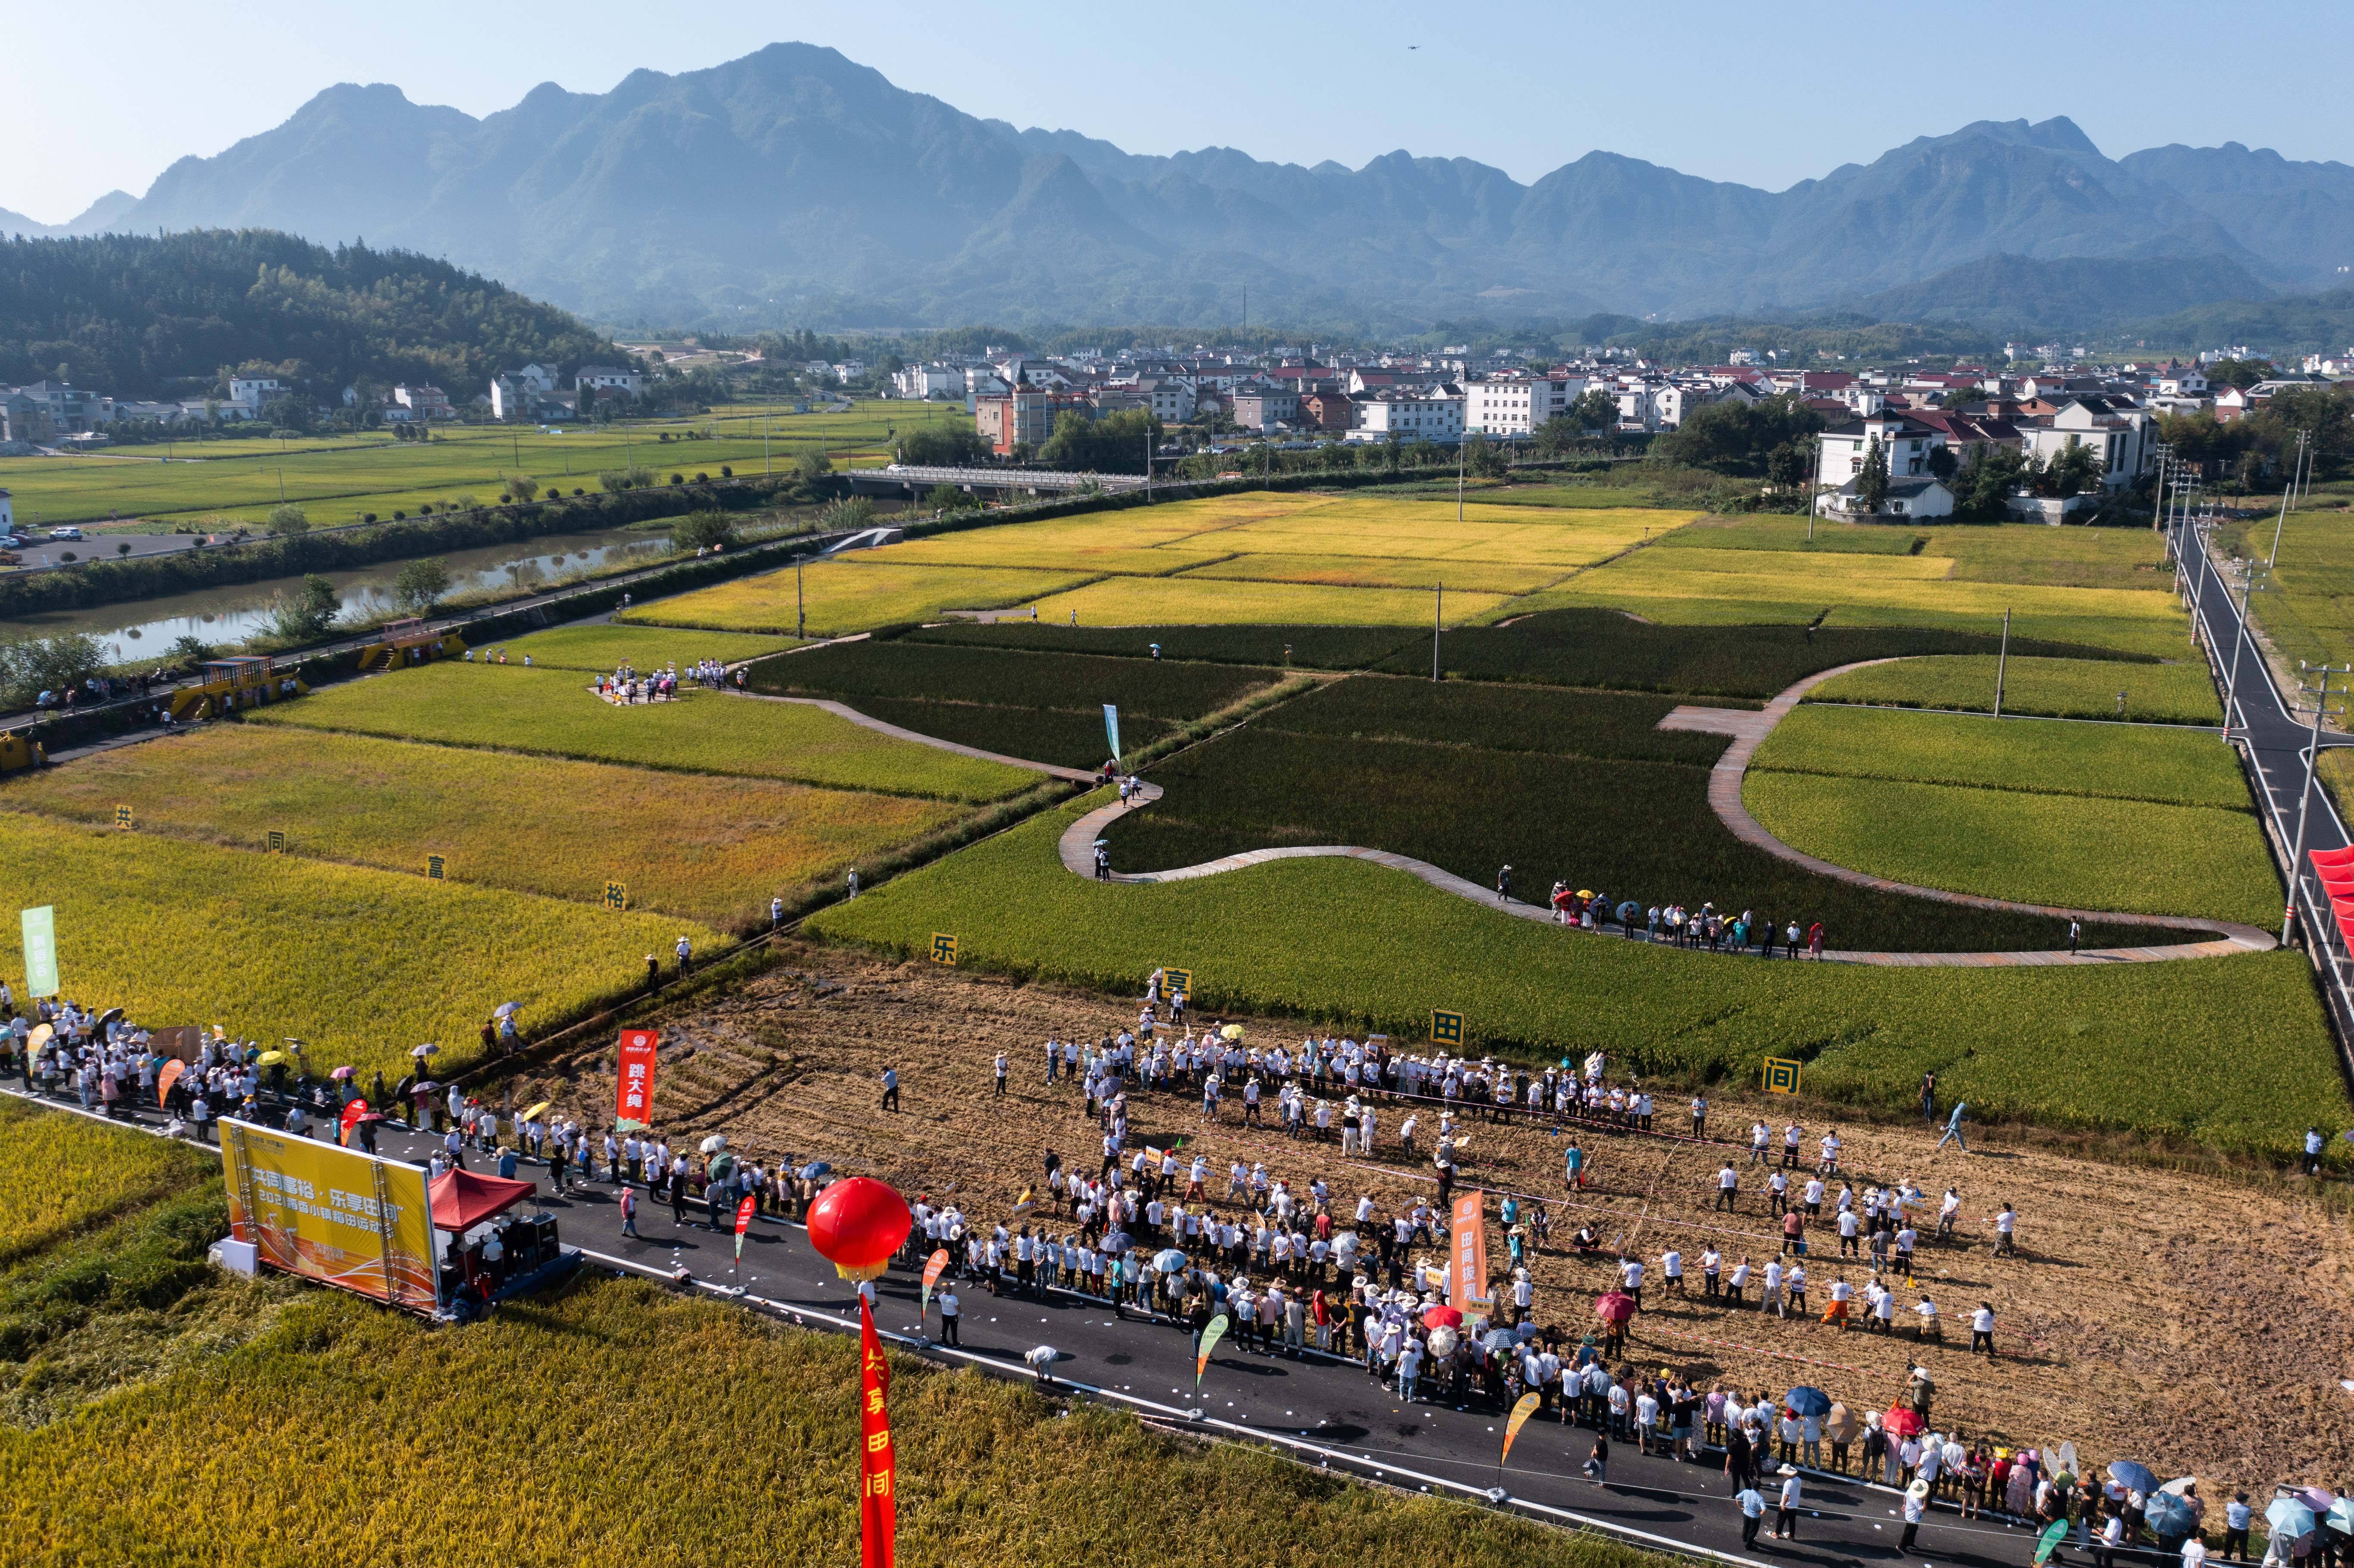 9月22日拍摄的大同镇的稻田赛场